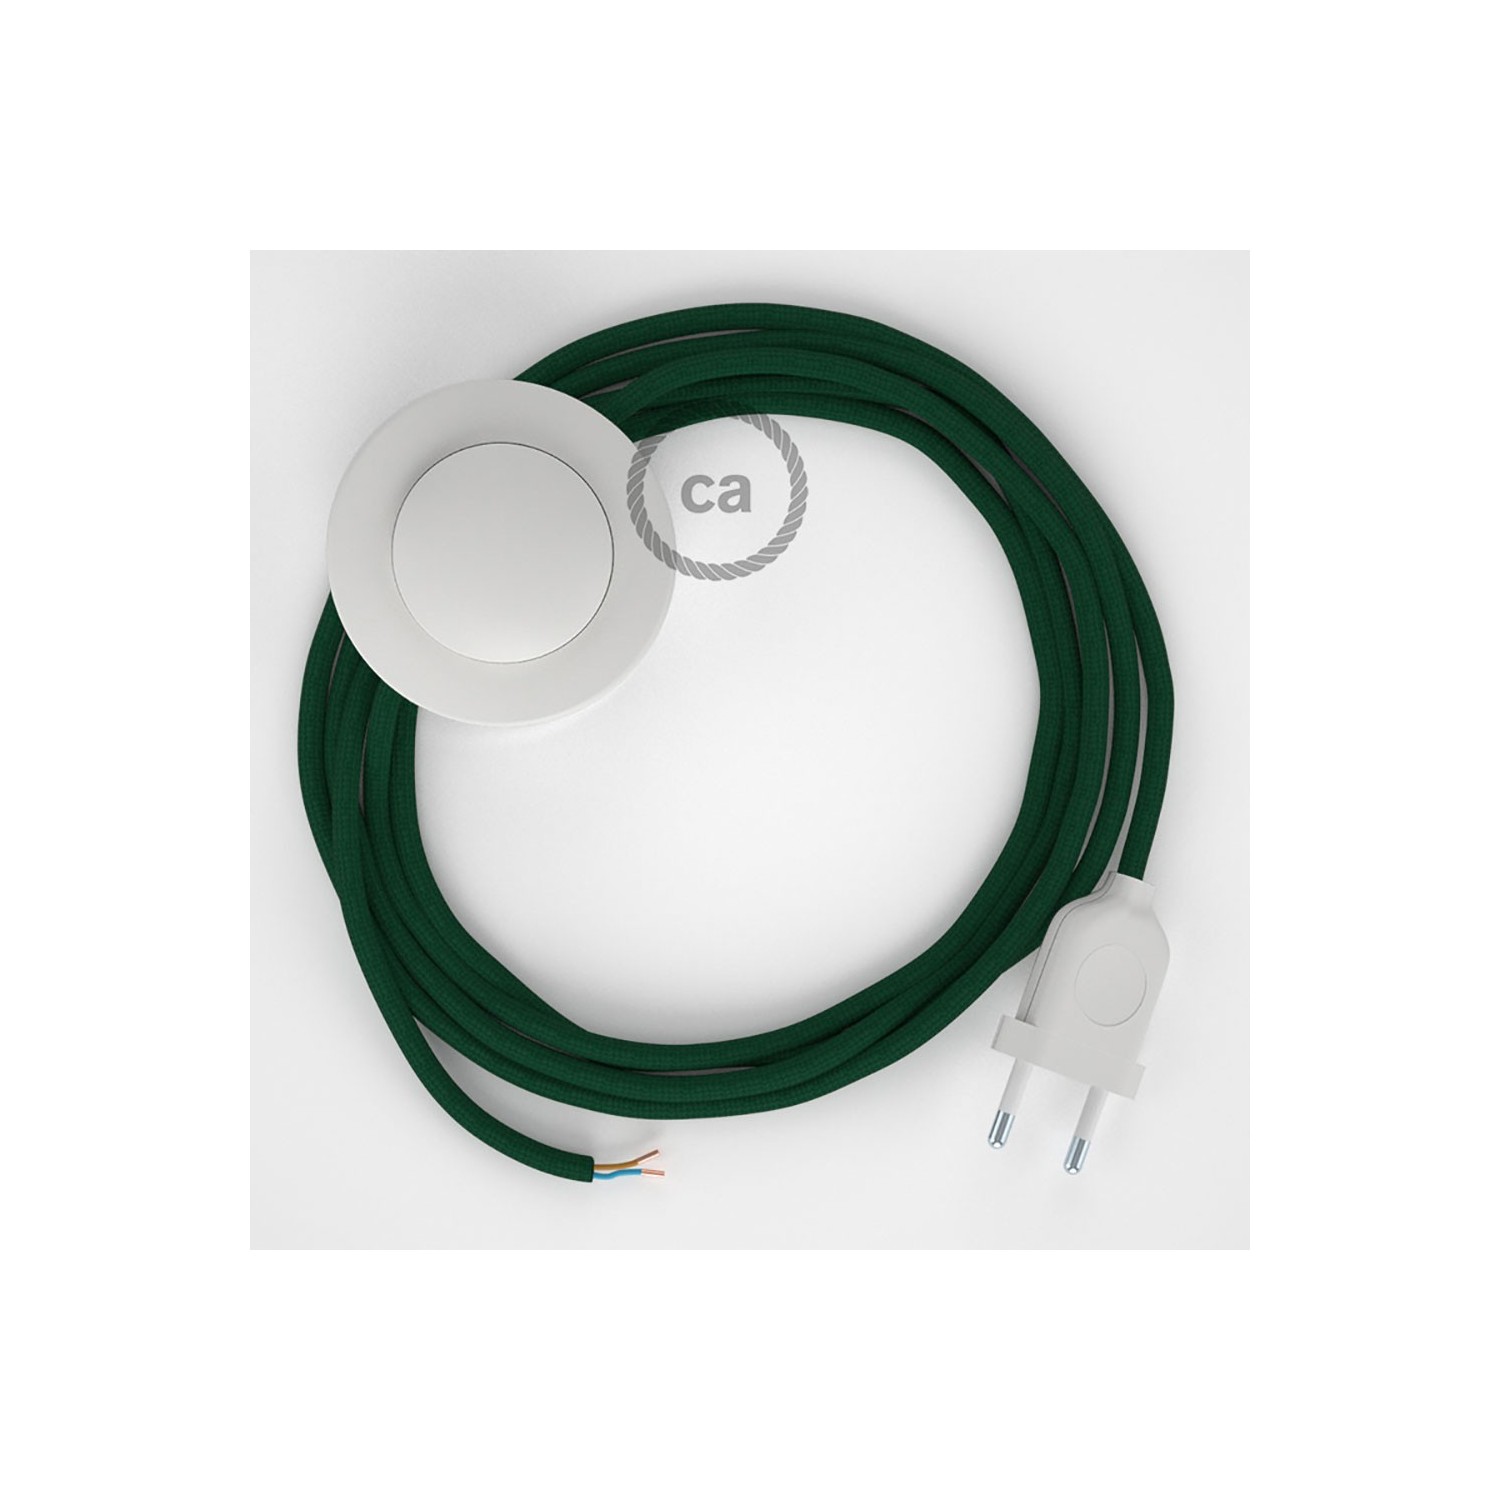 Cordon pour lampadaire, câble RM21 Effet Soie Vert Foncé 3 m. Choisissez la couleur de la fiche et de l'interrupteur!